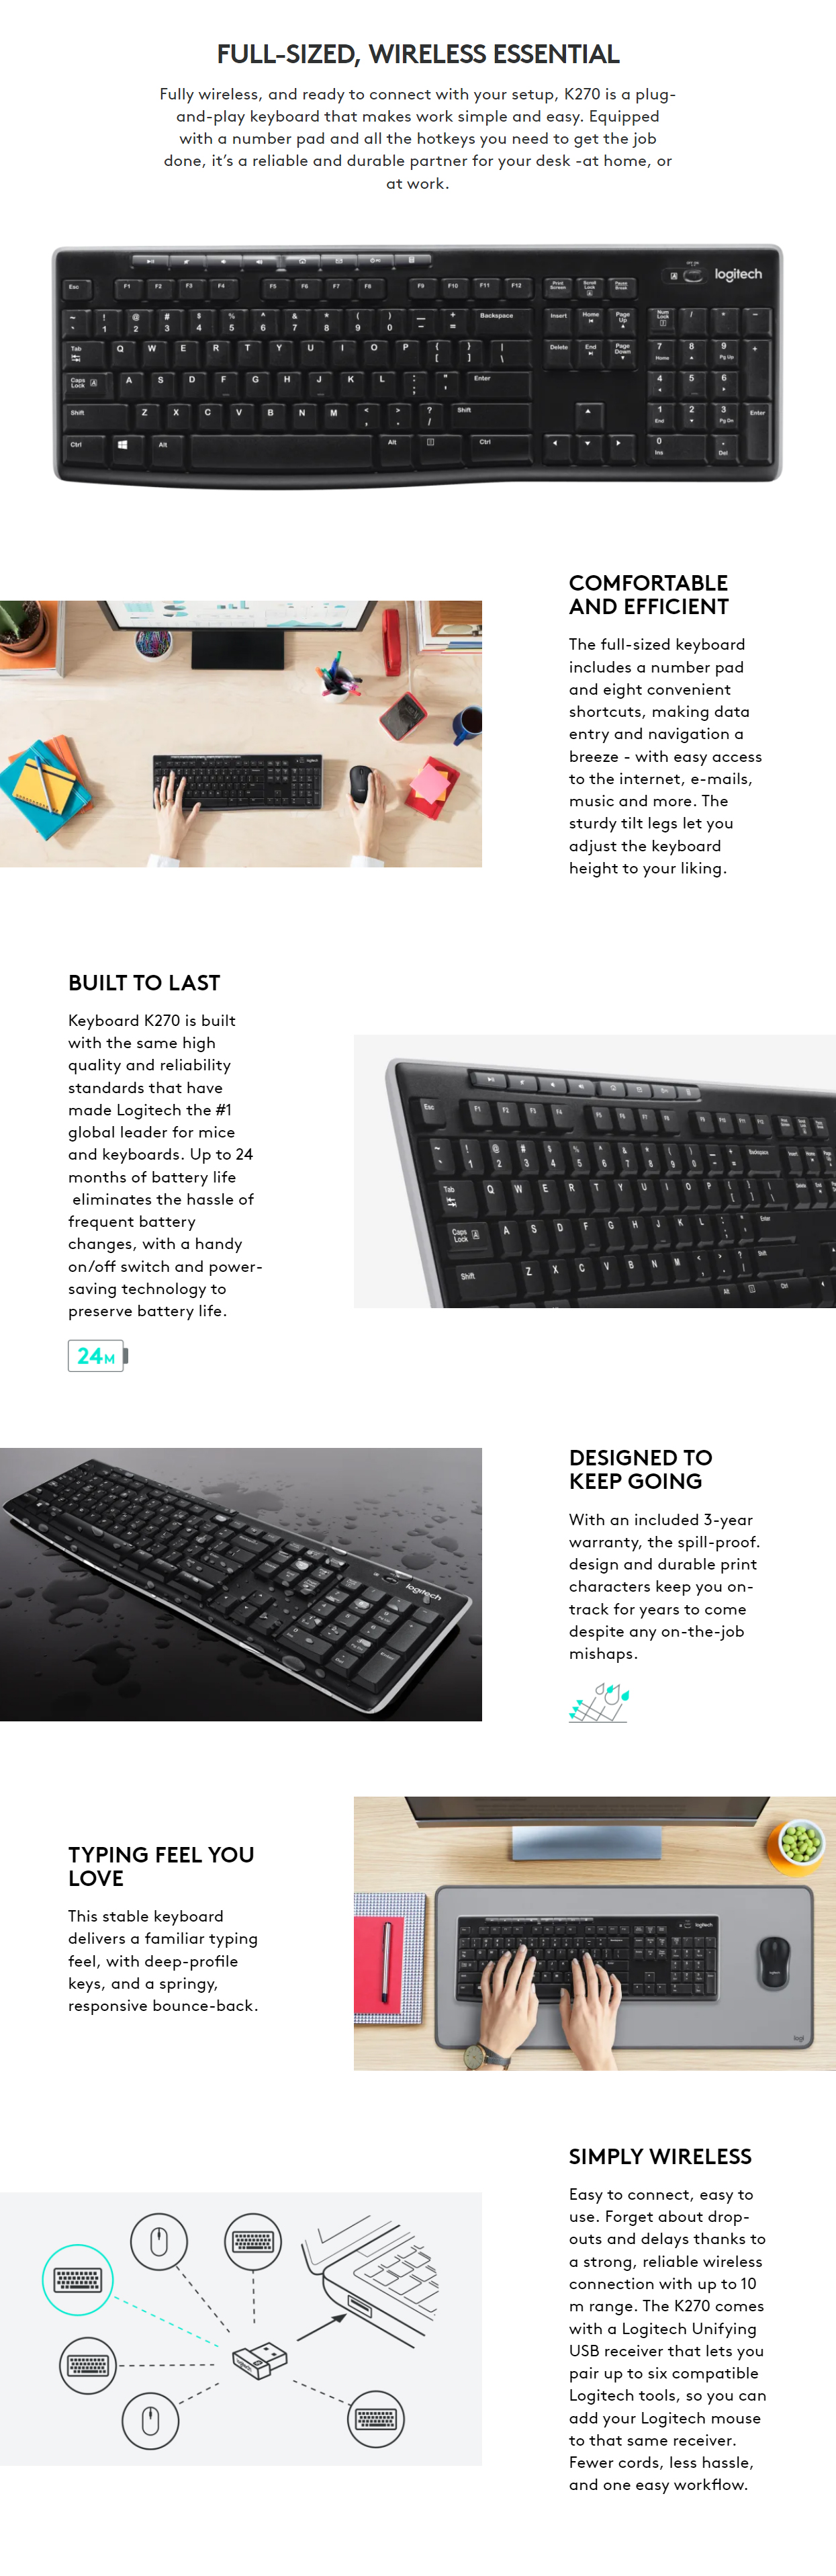 Keyboards-Logitech-K270-Wireless-Keyboard-Unifying-Receiver-1